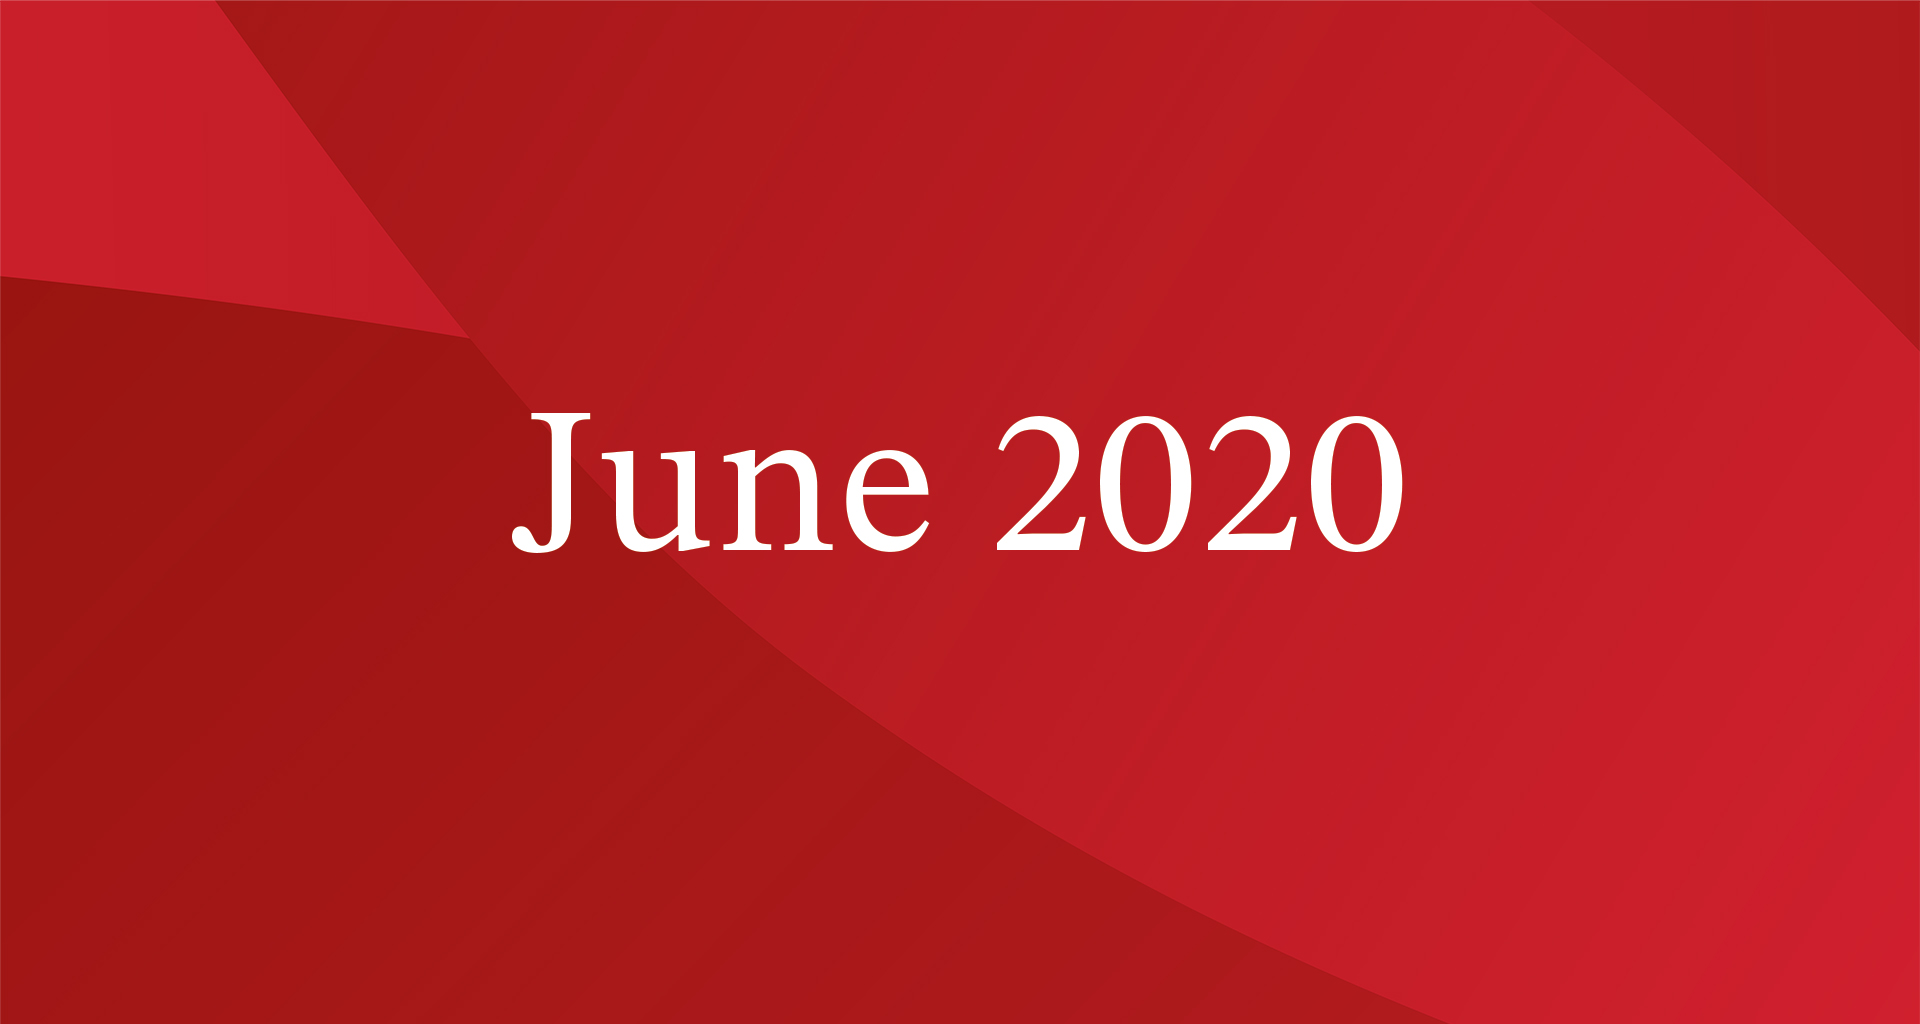 June 2020 President's Blog Image